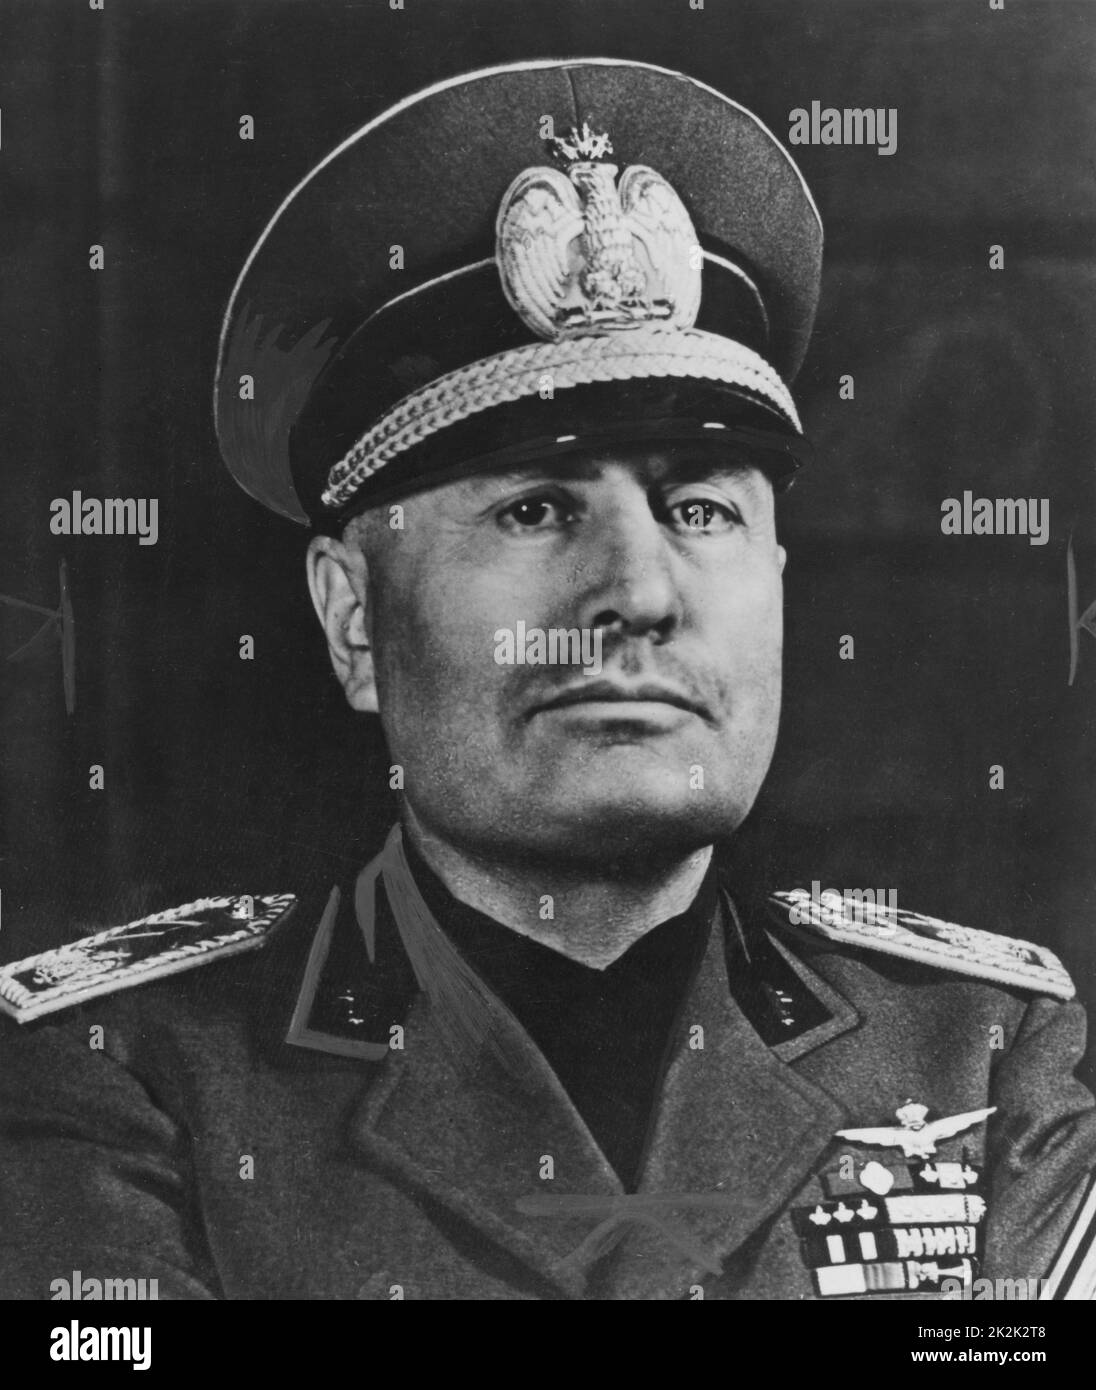 Porträt des italienischen Staatsmannes Benito Mussolini im Jahr 1942. Von 1925 bis 1943 errichtete er in Italien eine faschistische Diktatur. Stockfoto